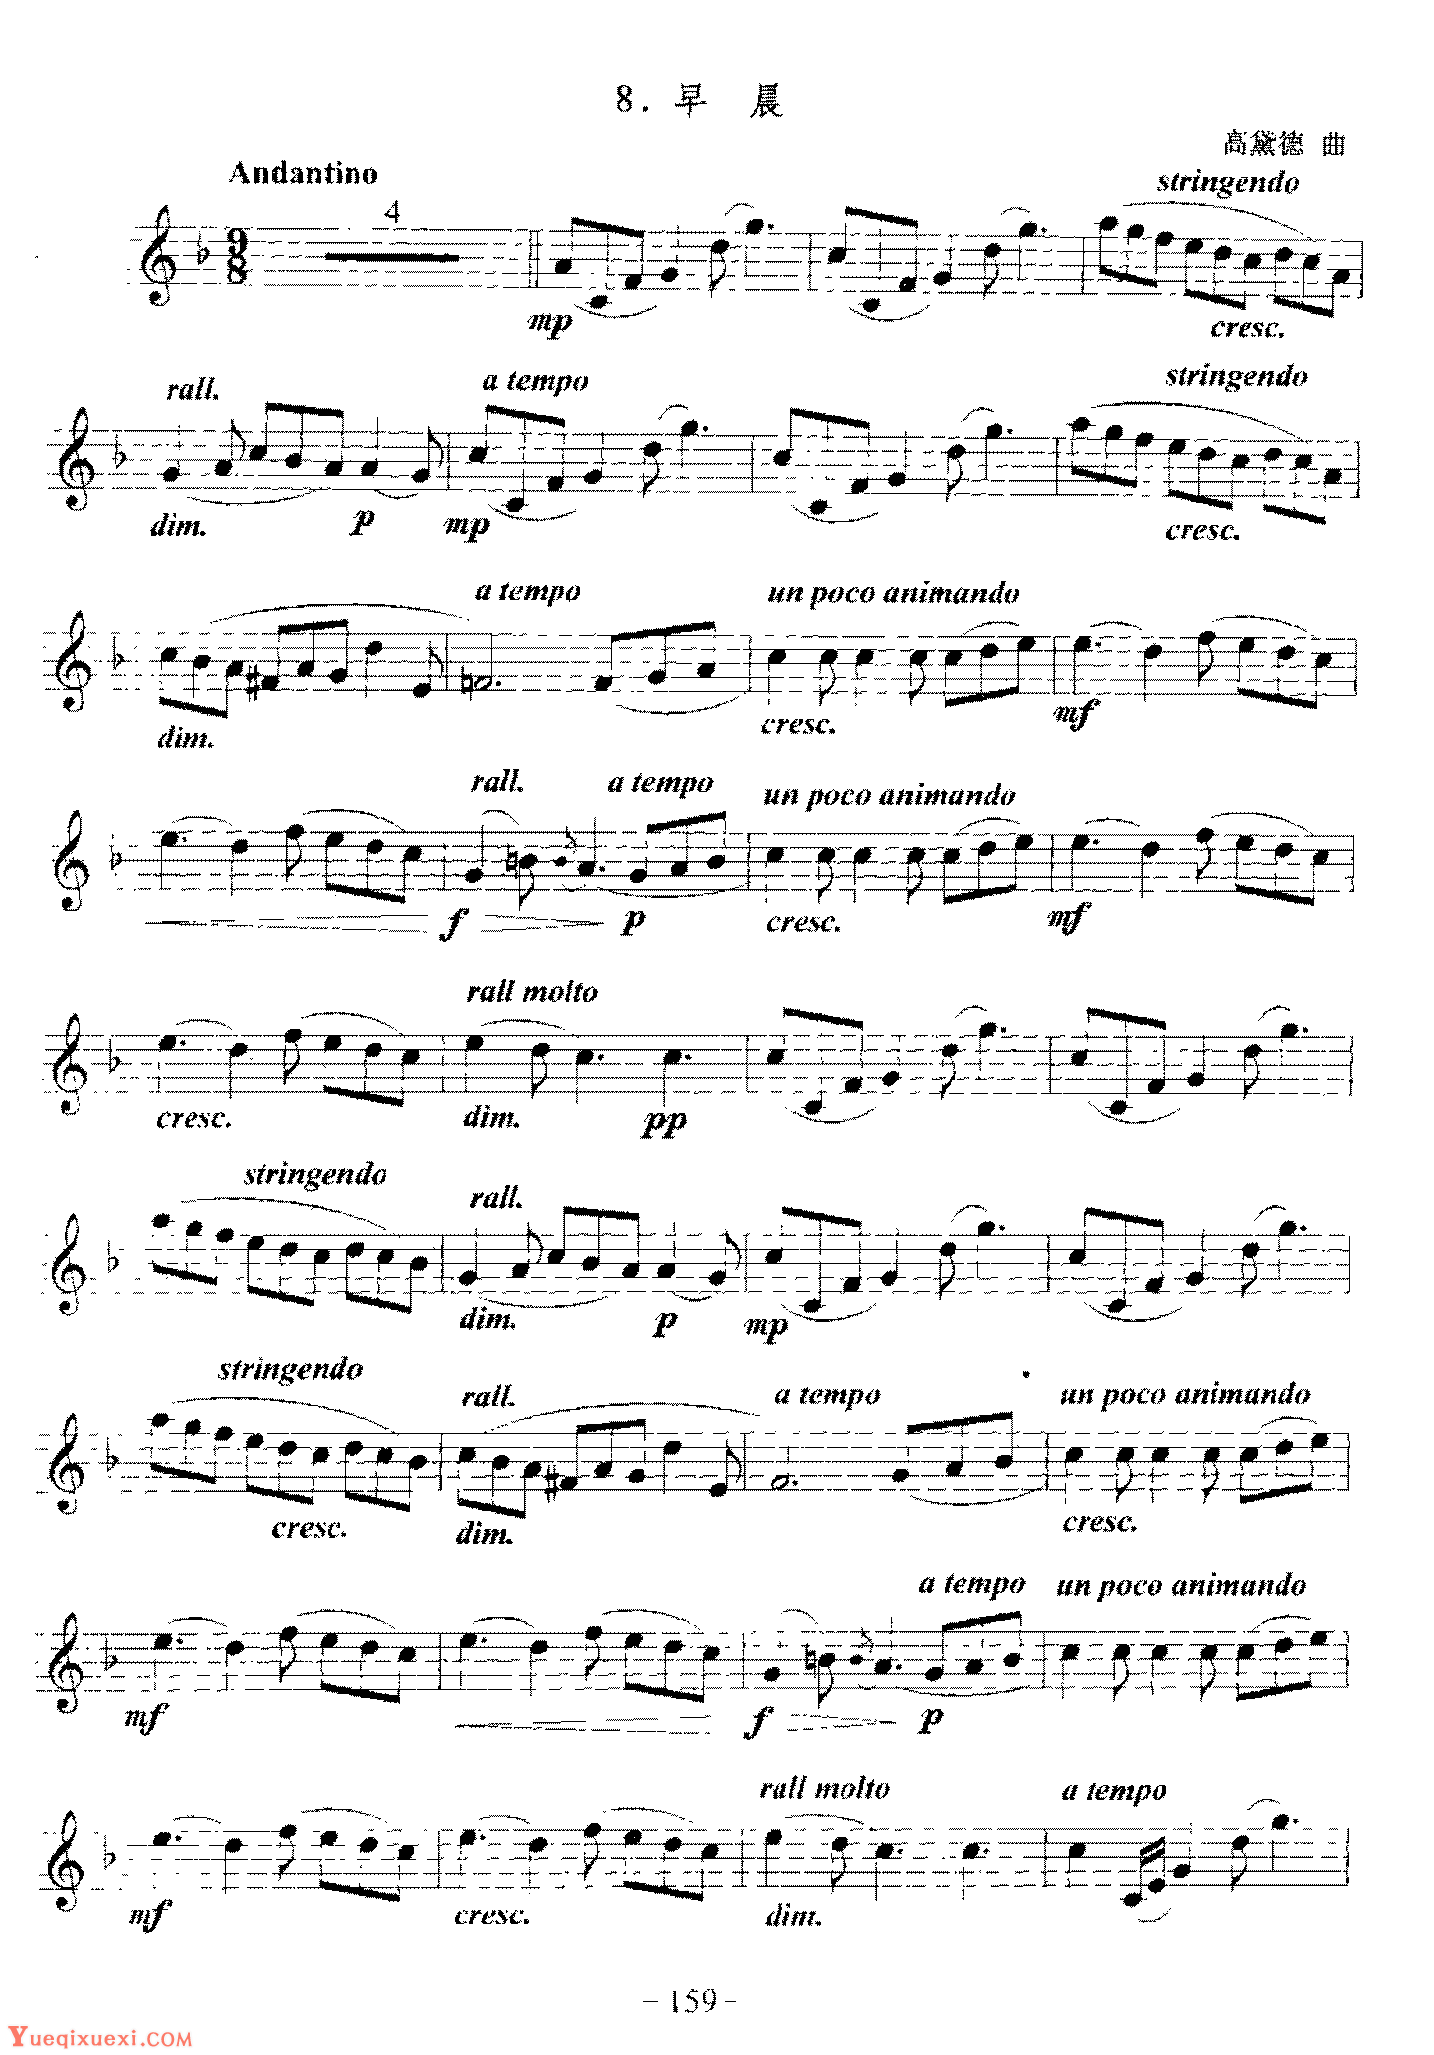 单簧管中外独奏曲《回旋曲》-单簧管曲谱 - 乐器学习网